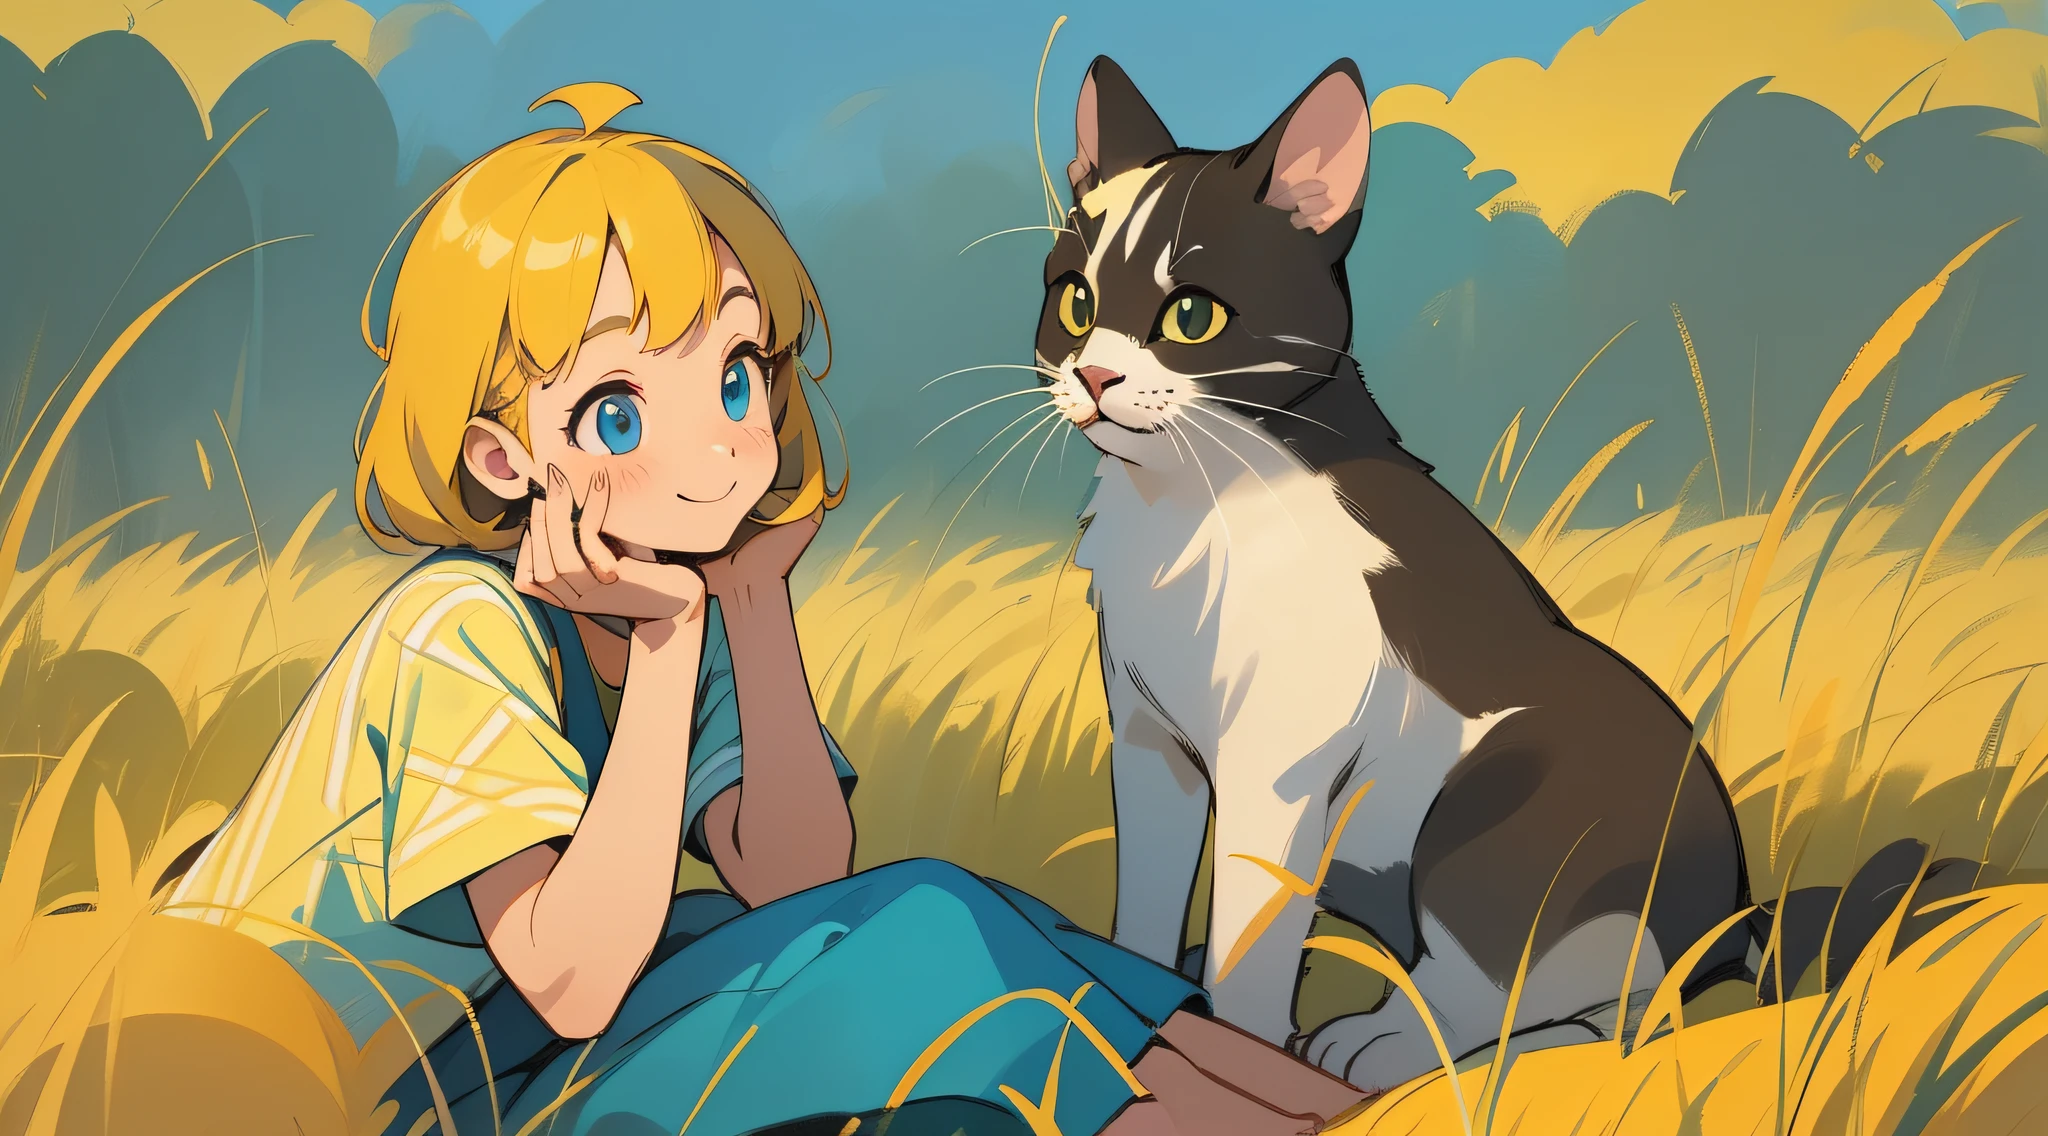 황금빛 논에 앉아 쉬고 있는 소녀，미소，고양이 1마리와 놀아주세요，새，잔디밭，피크닉 천，파란 하늘，백운，손으로 그린 그림，따뜻한 색상 팔레트